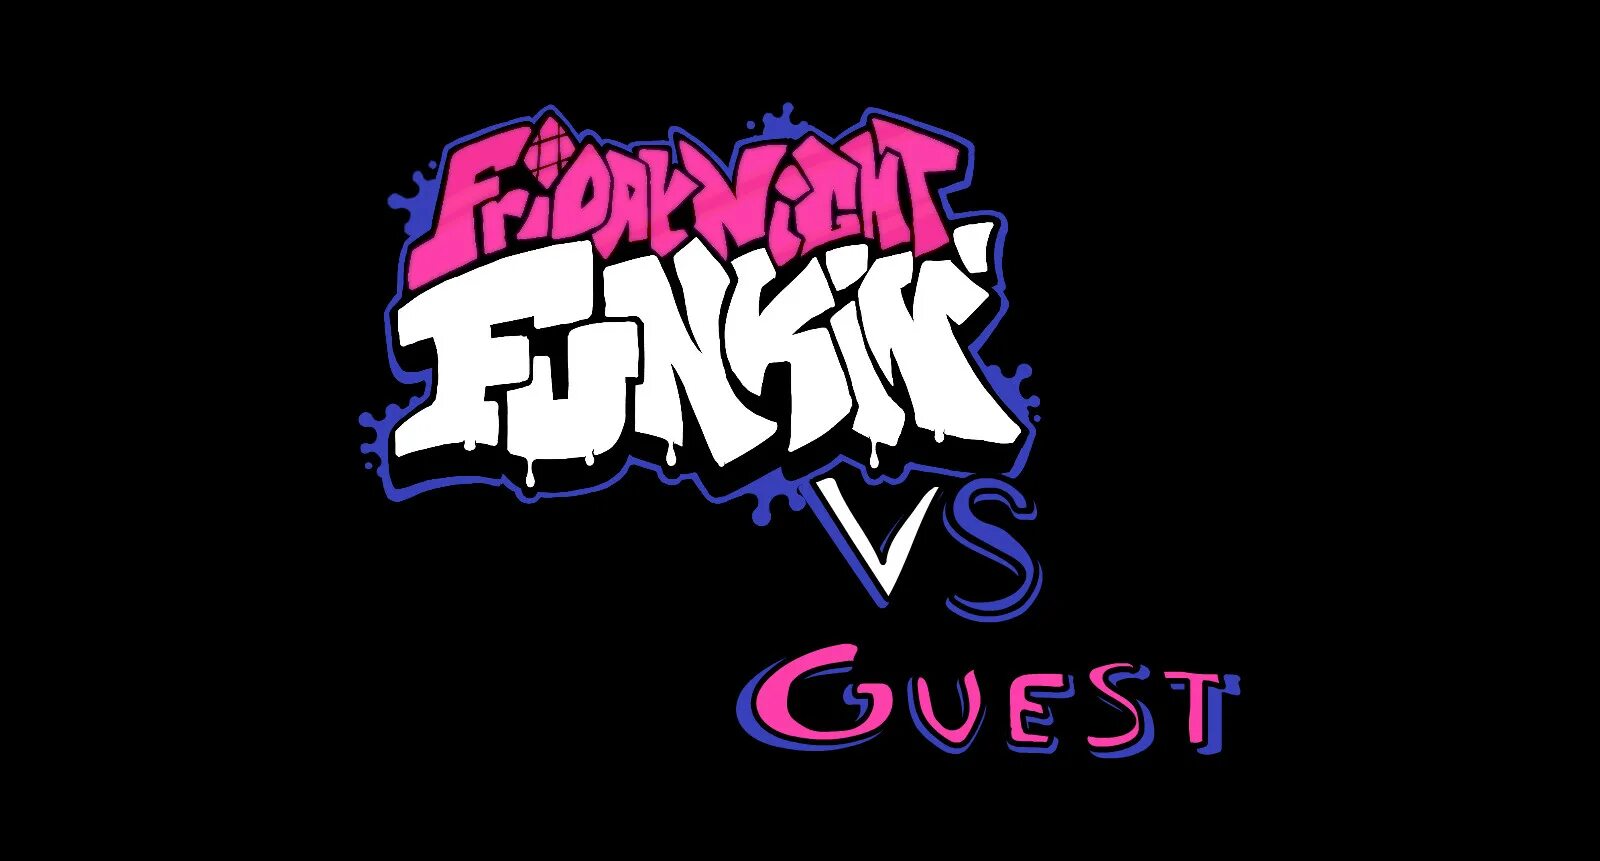 Музыка friday night. Among us игра Friday Night Funkin. Логотип Фридей Найт Фанкин. Friday Night Funkin импостер. Impostor FNF Mod.